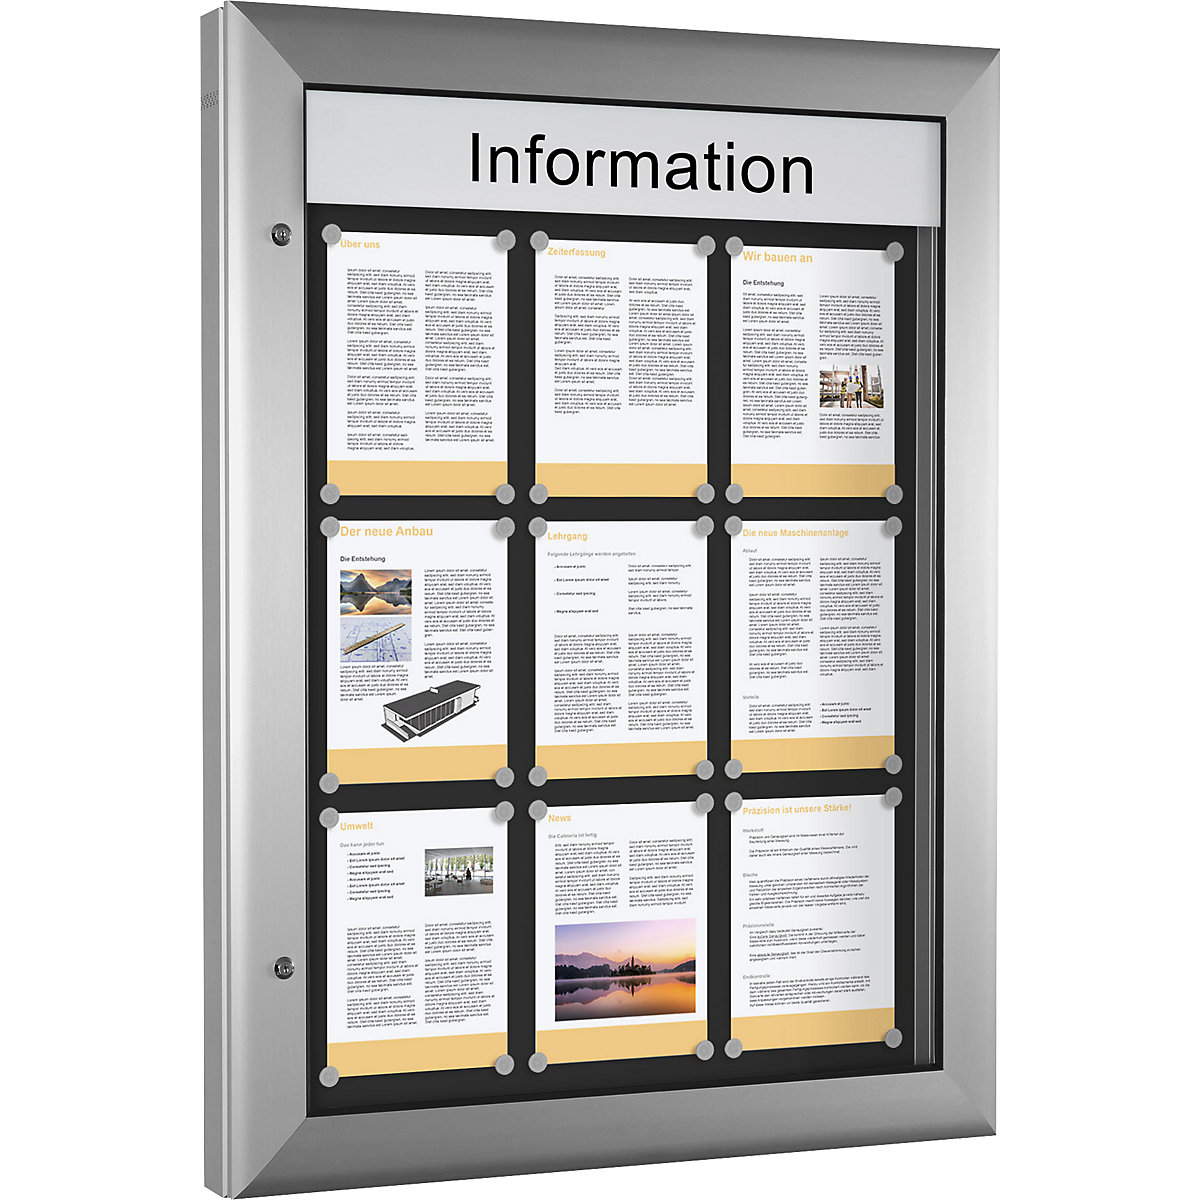 Informační skříňka pro použití uvnitř i venku